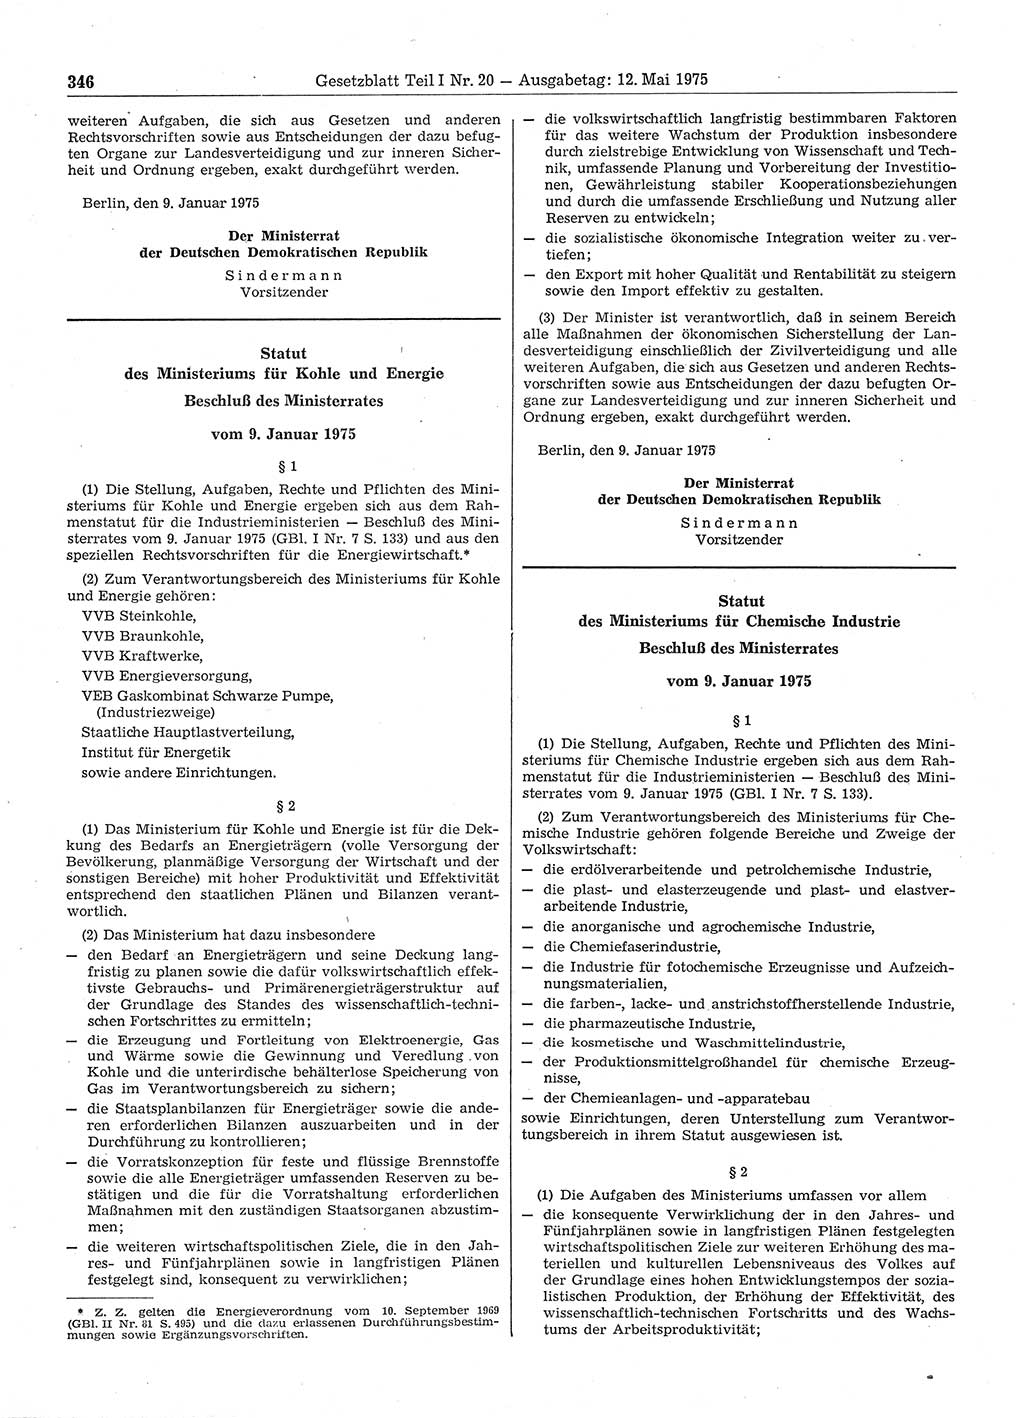 Gesetzblatt (GBl.) der Deutschen Demokratischen Republik (DDR) Teil Ⅰ 1975, Seite 346 (GBl. DDR Ⅰ 1975, S. 346)